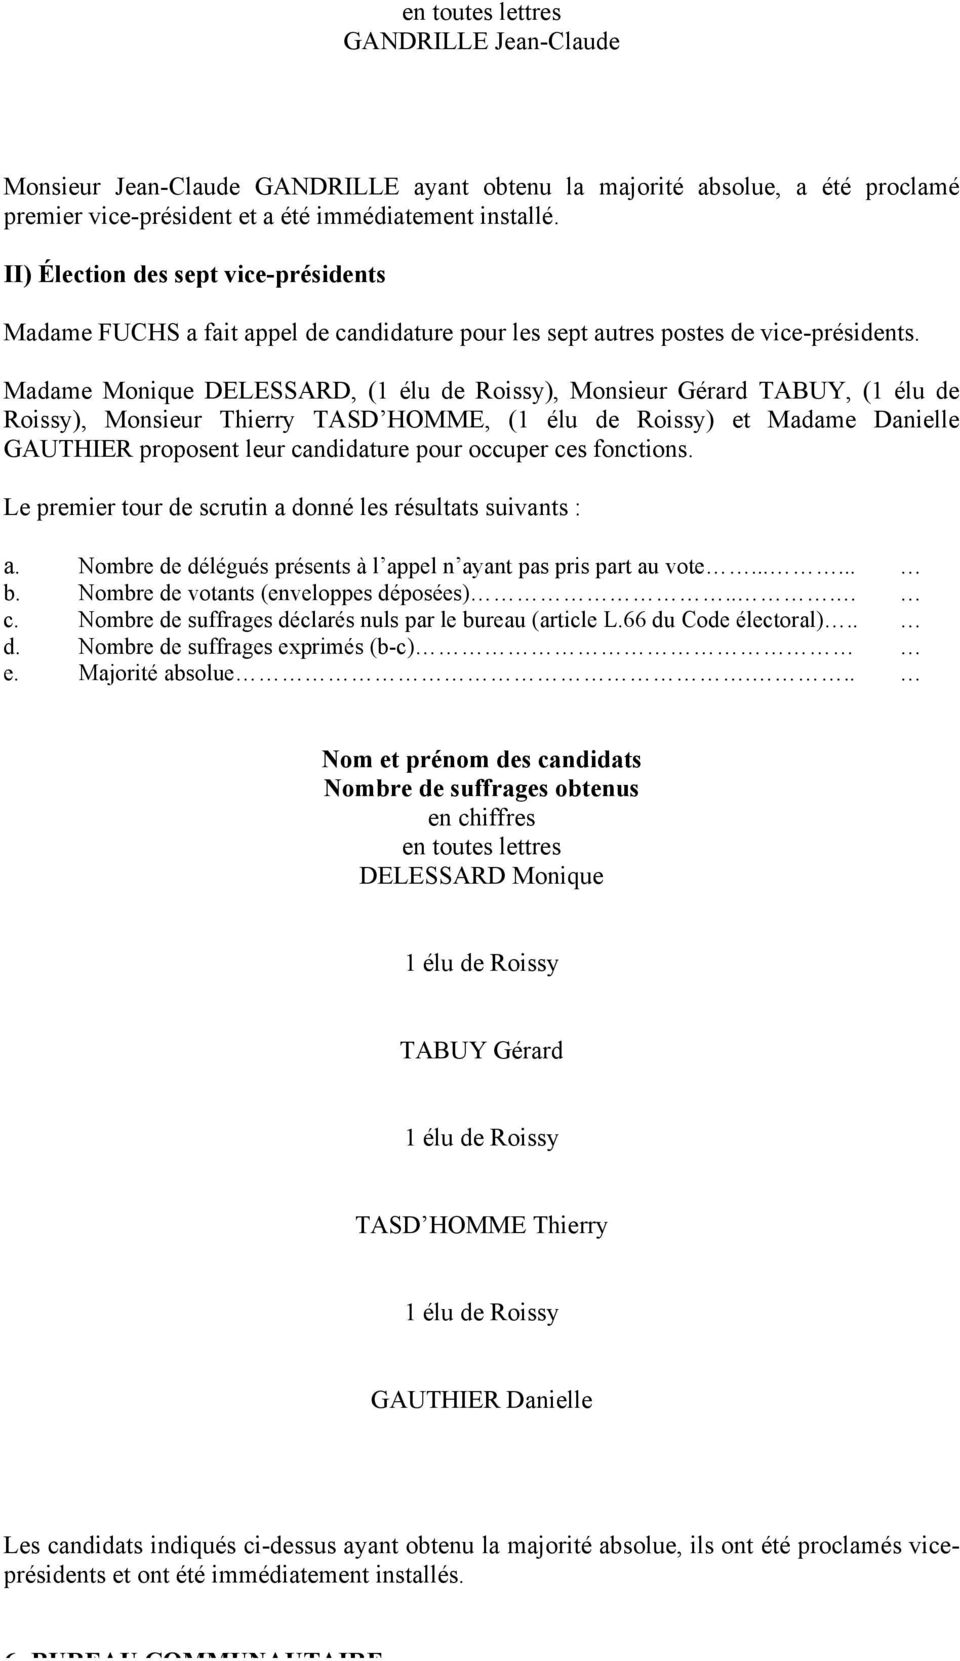 Madame Monique DELESSARD, (1 élu de Roissy), Monsieur Gérard TABUY, (1 élu de Roissy), Monsieur Thierry TASD HOMME, (1 élu de Roissy) et Madame Danielle GAUTHIER proposent leur candidature pour